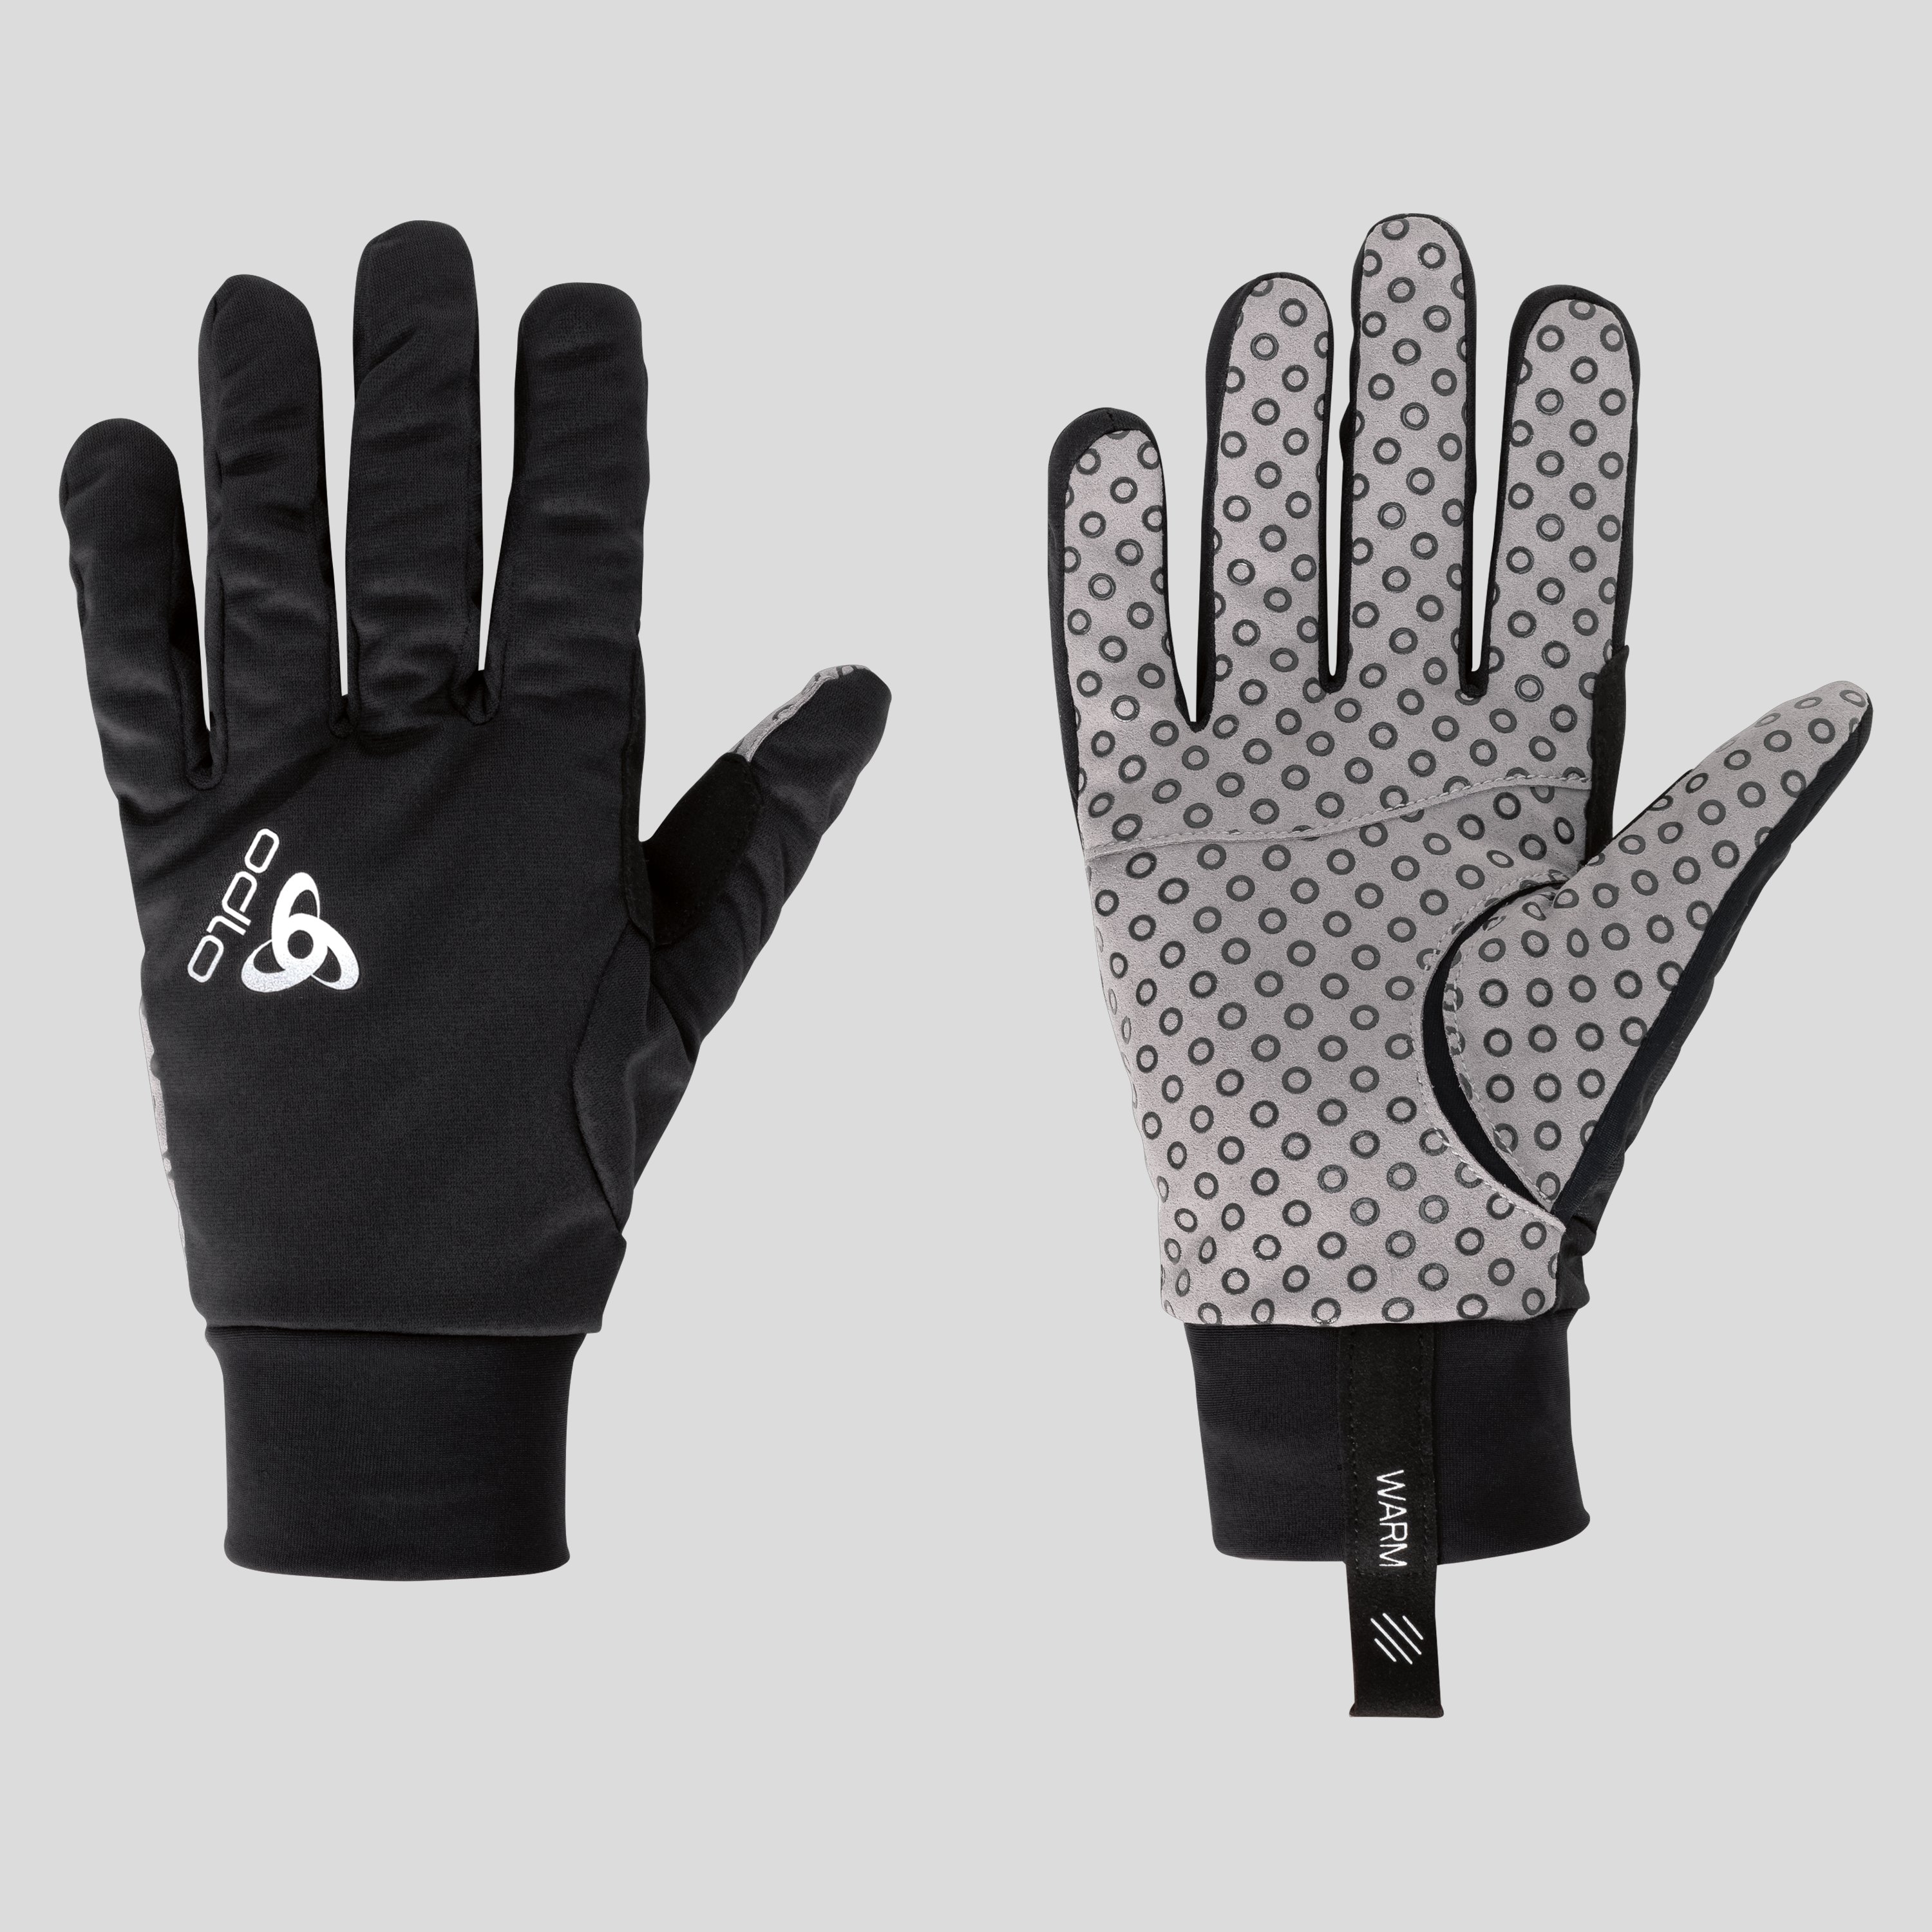 ODLO Aeolus Warm Handschuhe, M, schwarz